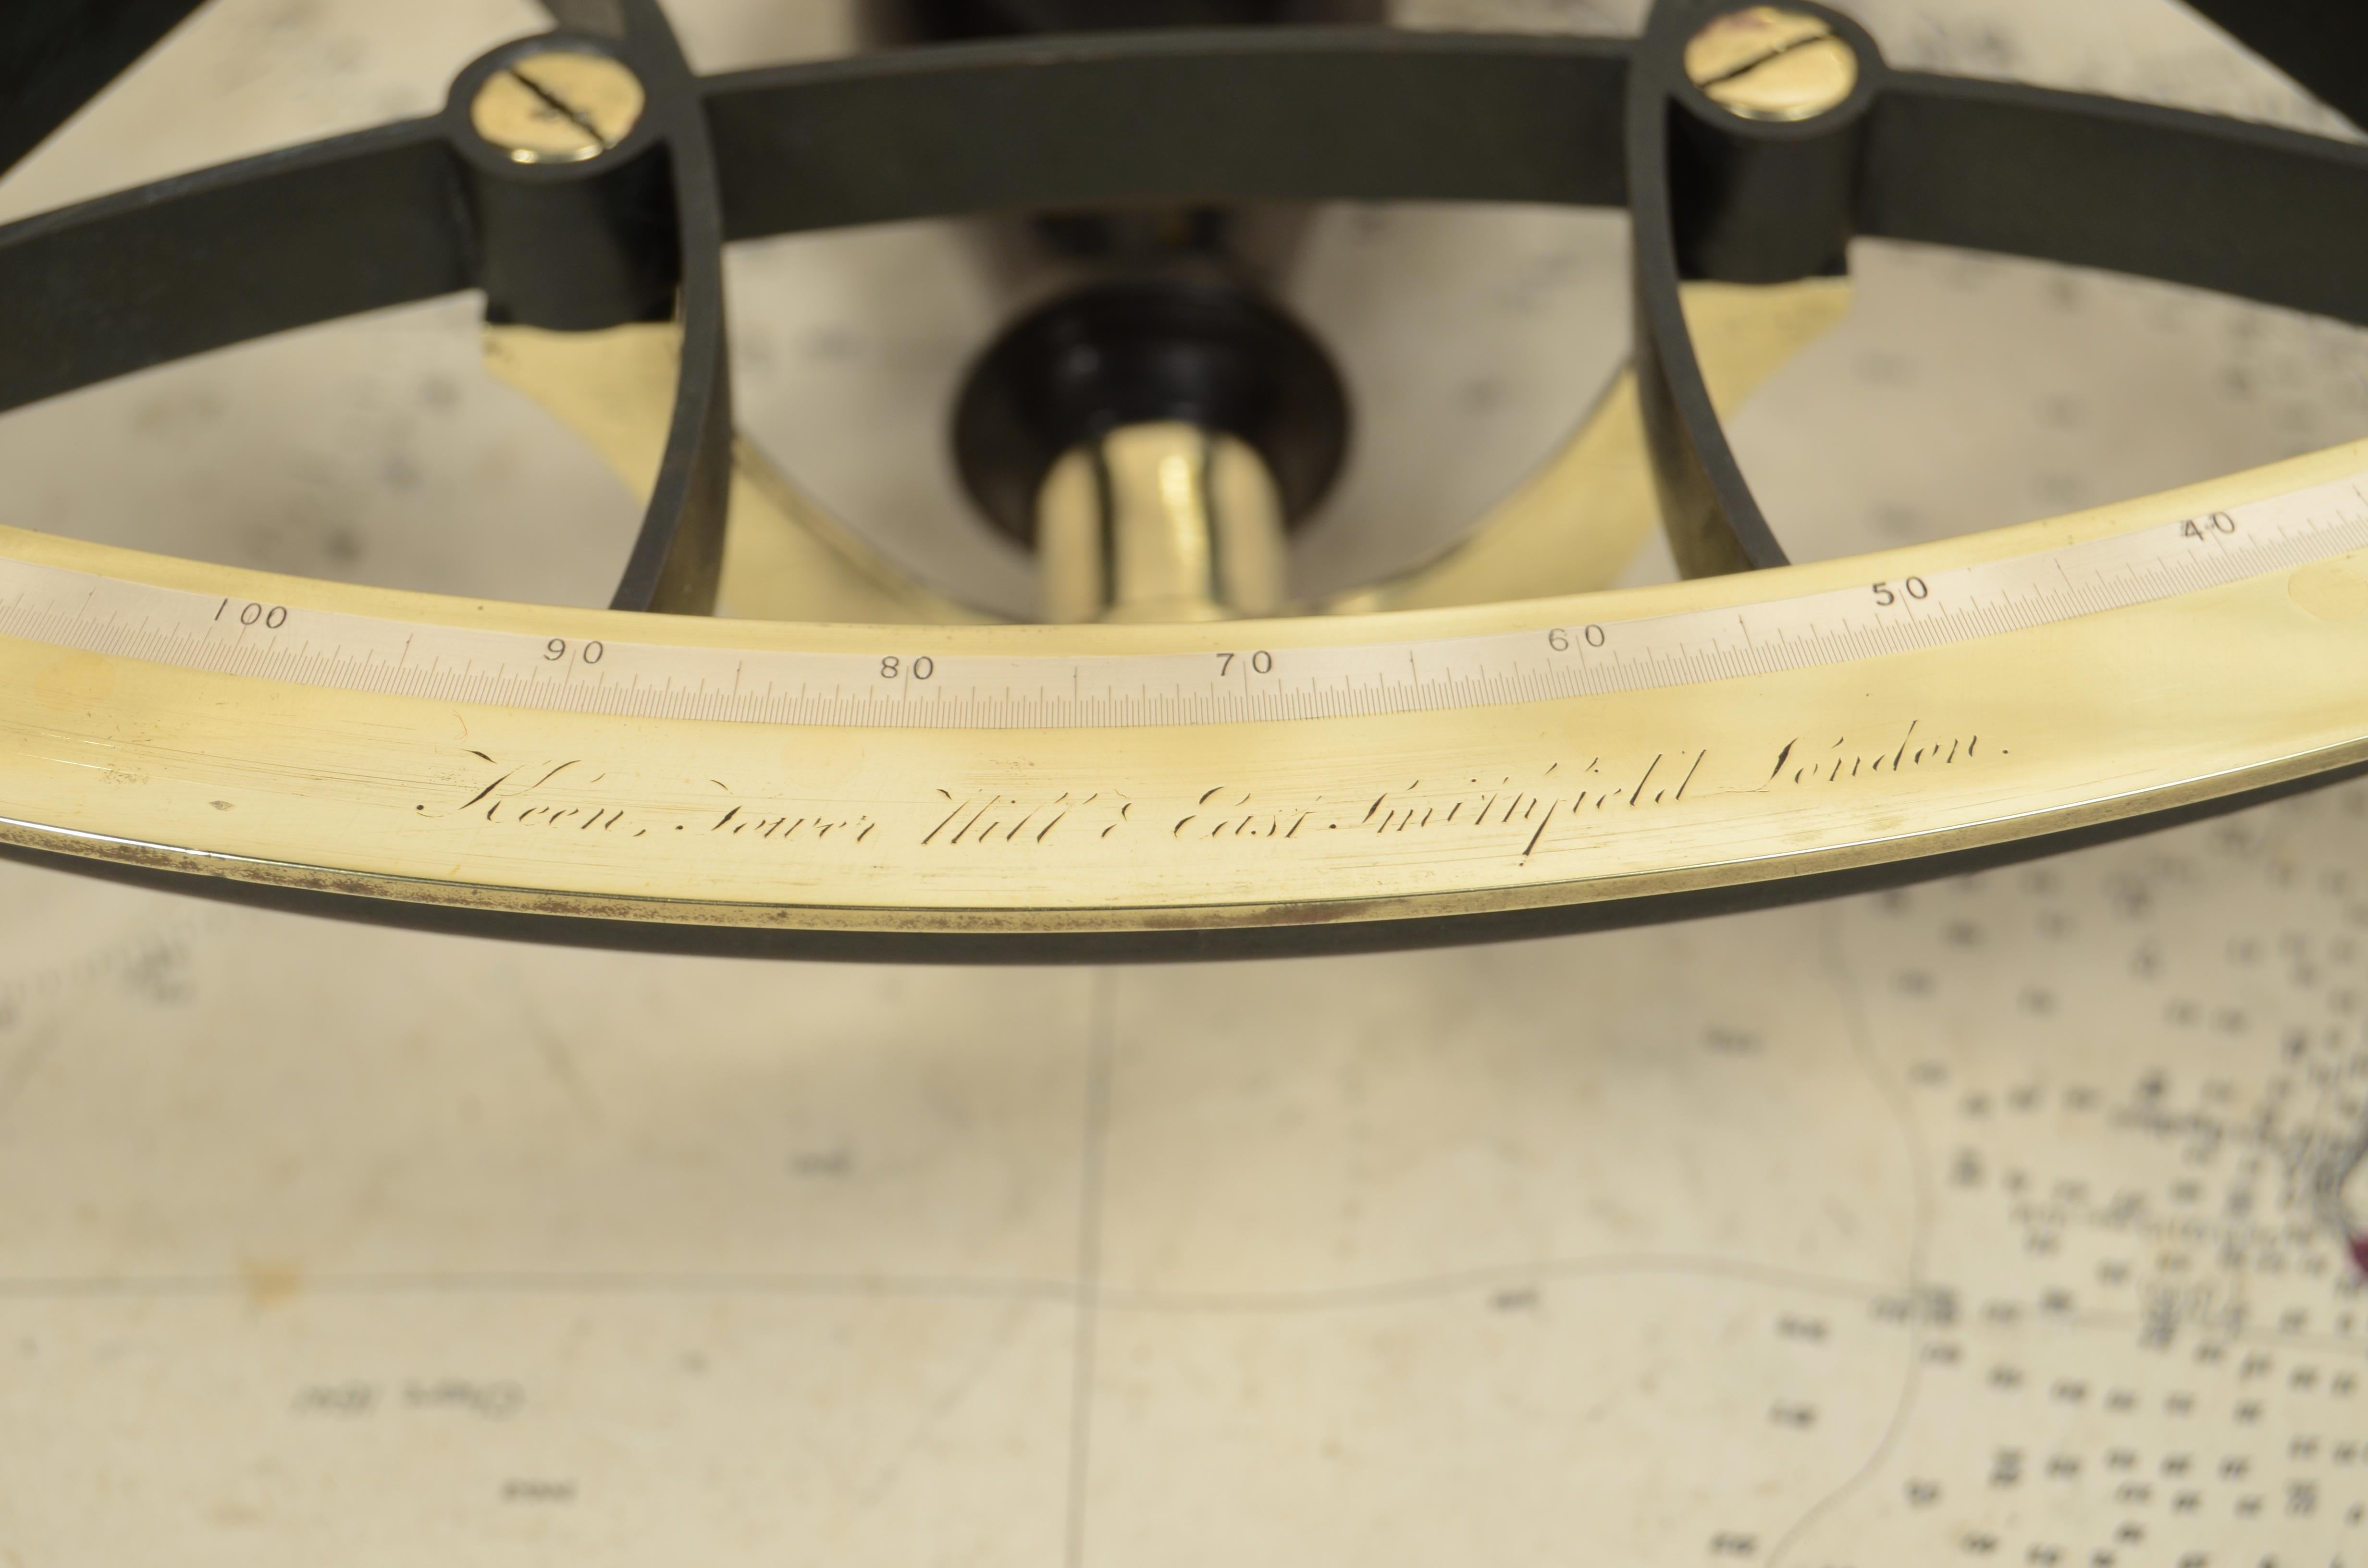 Quintante in ottone firmato Robert John Keen Tower Hill & East Smithfield London databile tra il 1834 e il 1840, sul coperchio una targhetta in ottone reca incise le seguenti iniziali D.E.E.
Lo strumento è completo di ottiche e alloggiato nella sua